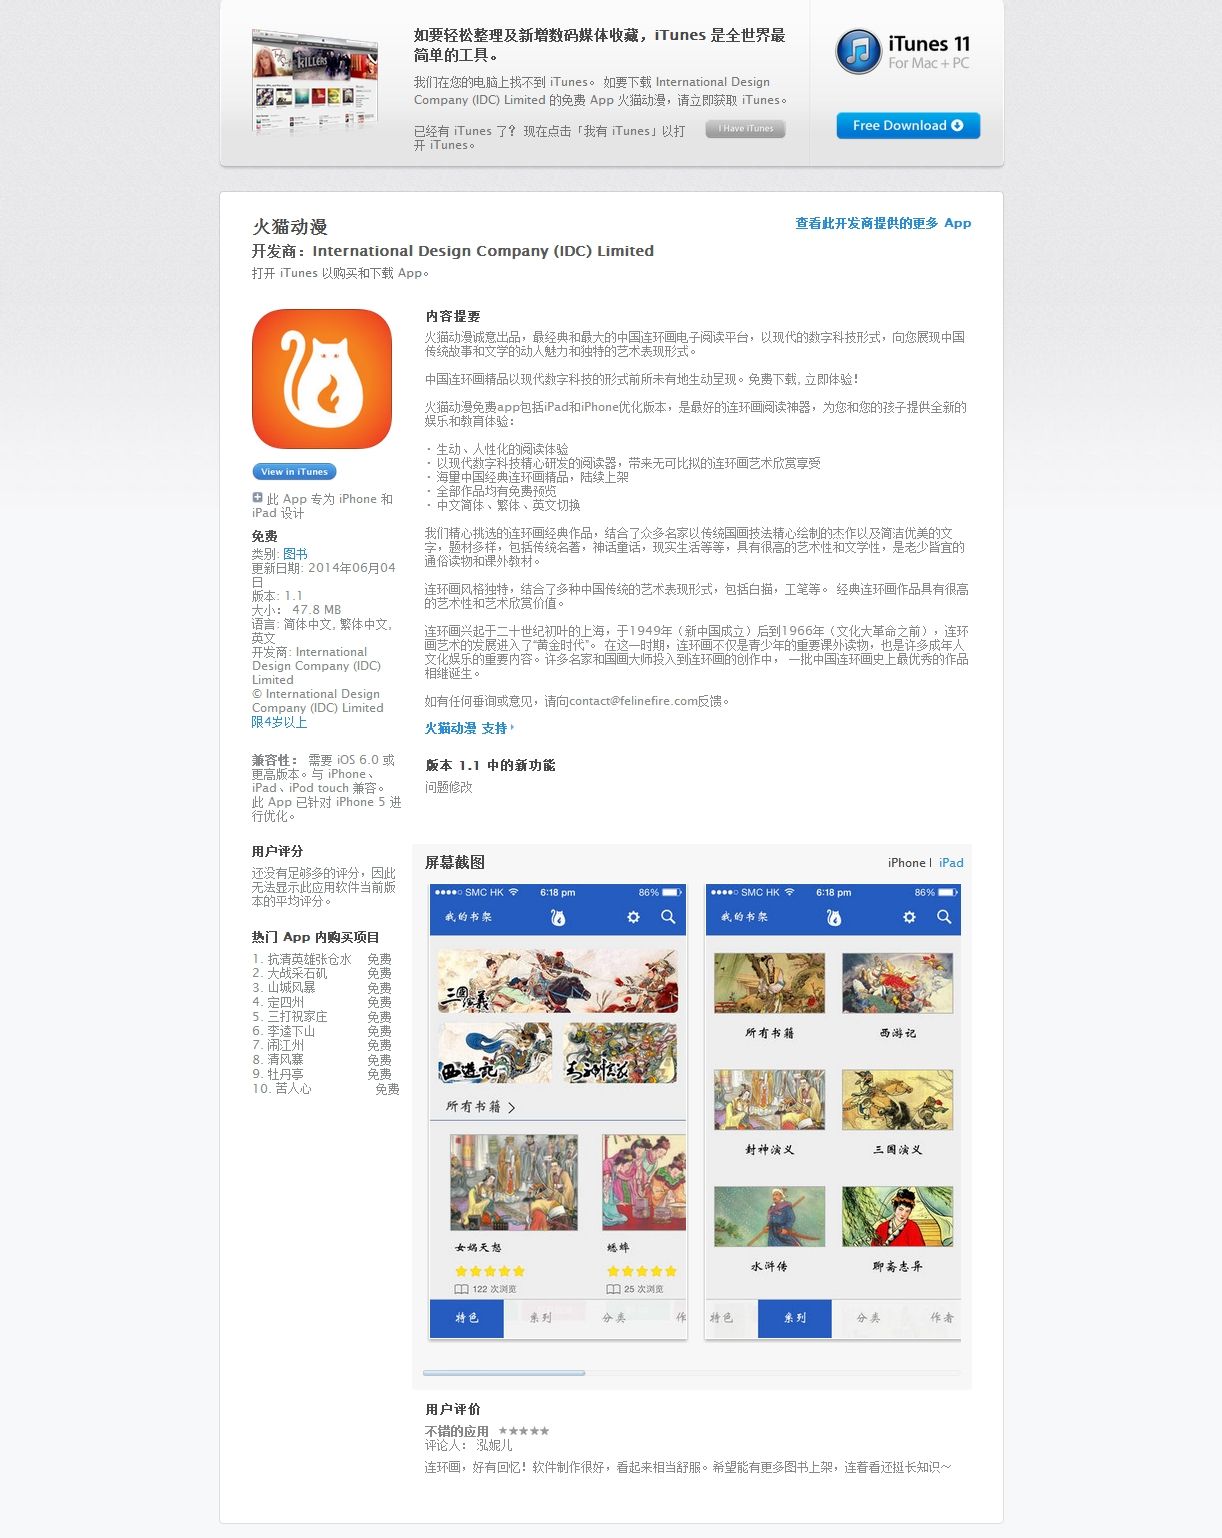 iTunes的App Store中的“火貓動漫”